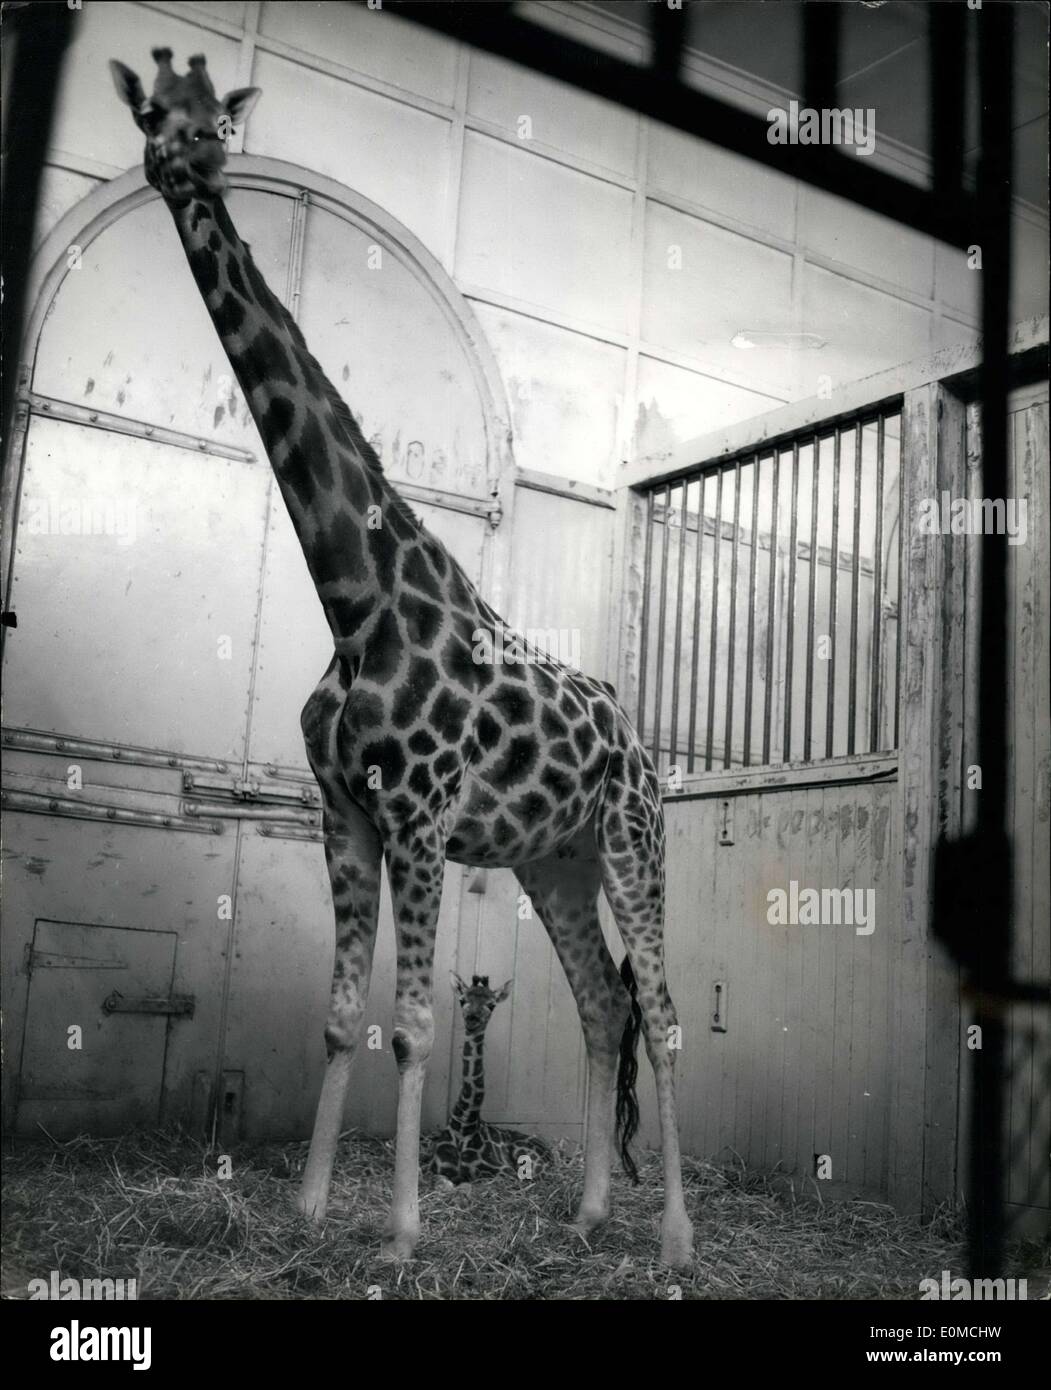 Sept. 29, 1954 - Zoo Nachwuchs. Chris - die Giraffe: Wochen alte Nachwuchs von den Londoner Zoo Giraffen, Maud und Monty - '' Chris'' benannt wurde. Foto zeigt Mutter Giraffe steht Maud über ihr Baby '' Chris'' im Zoo heute Nachmittag zu schützen. Stockfoto